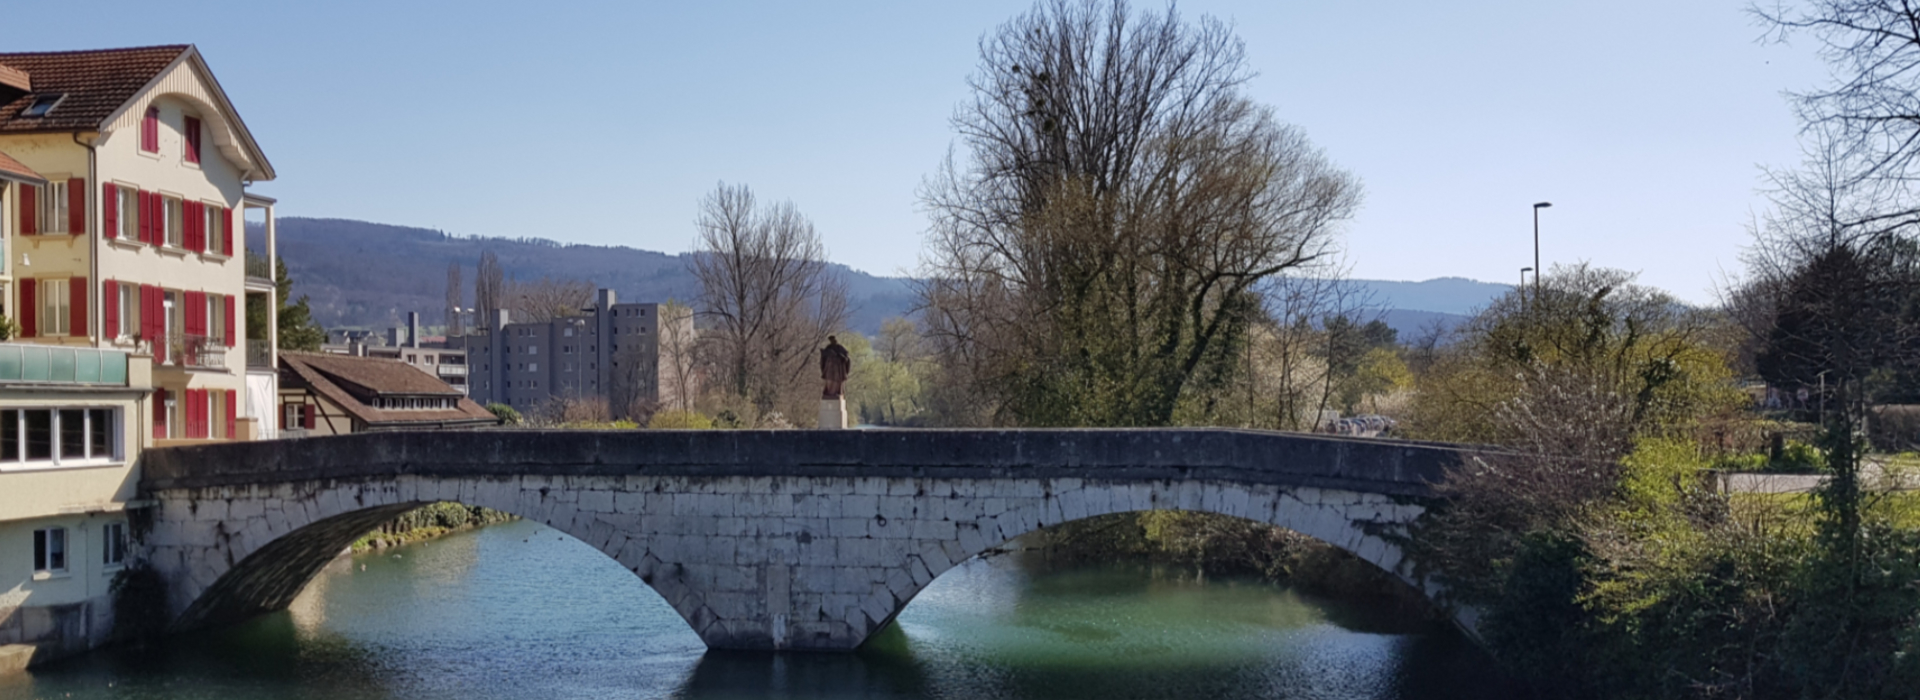 Auf dem Bild sieht man die Nepomukbrücke in Dornach